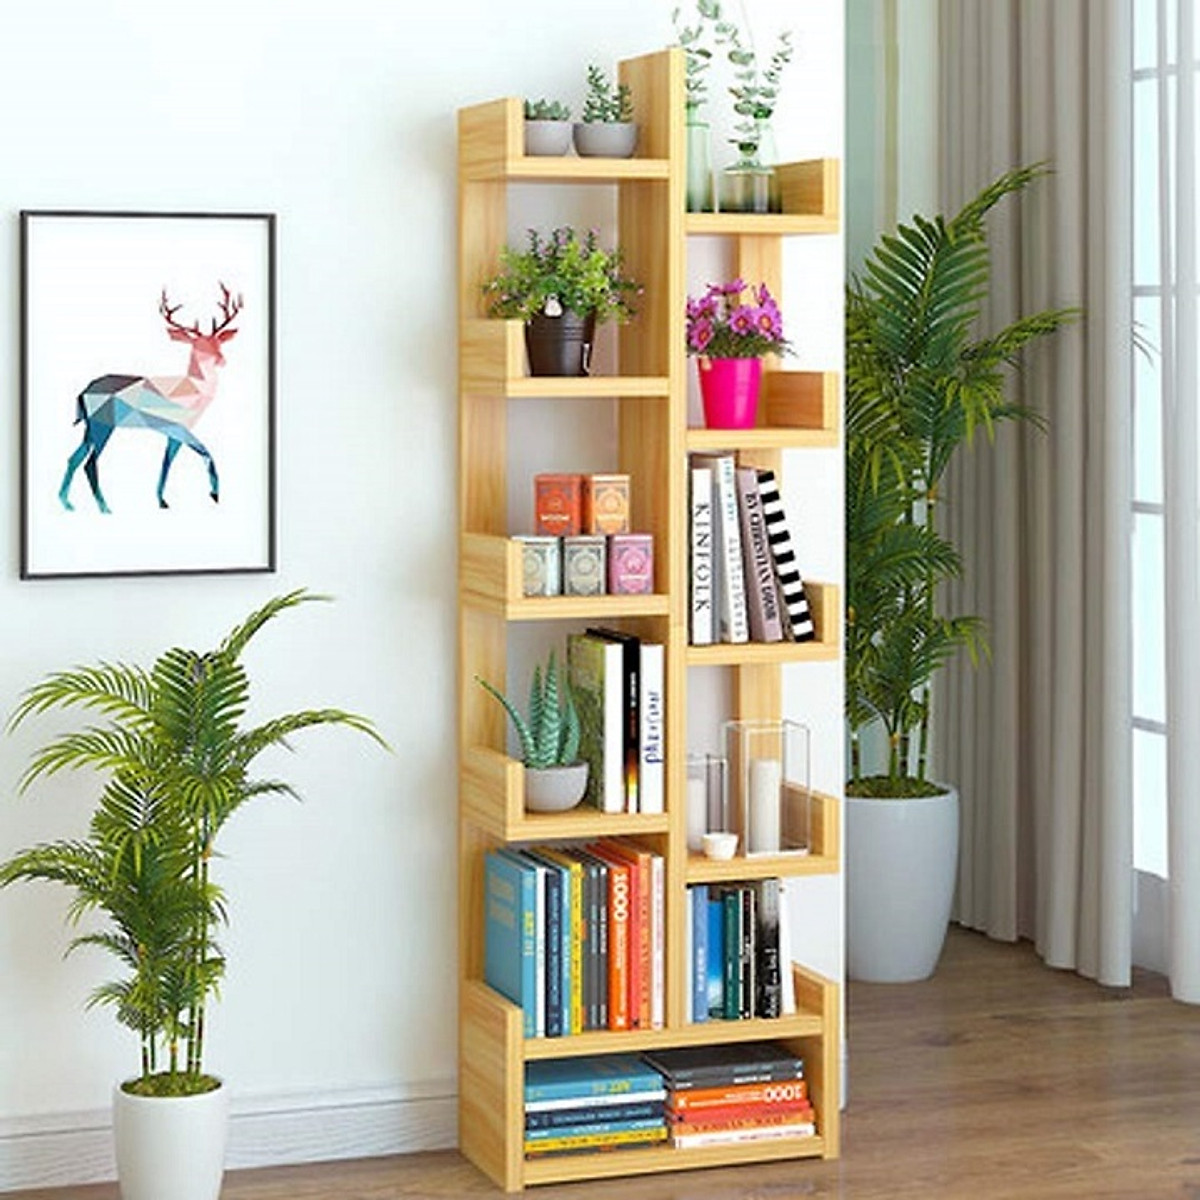 Kệ sách bằng gỗ là một trong những điểm nhấn quan trọng trong nội thất của gia đình. Với những thiết kế đa dạng và đầy màu sắc, kệ sách giúp bạn sắp xếp những cuốn sách yêu thích của mình một cách dễ dàng và độc đáo hơn bao giờ hết. Hãy cùng khám phá các thiết kế độc đáo và phù hợp với căn nhà của bạn ngay hôm nay.